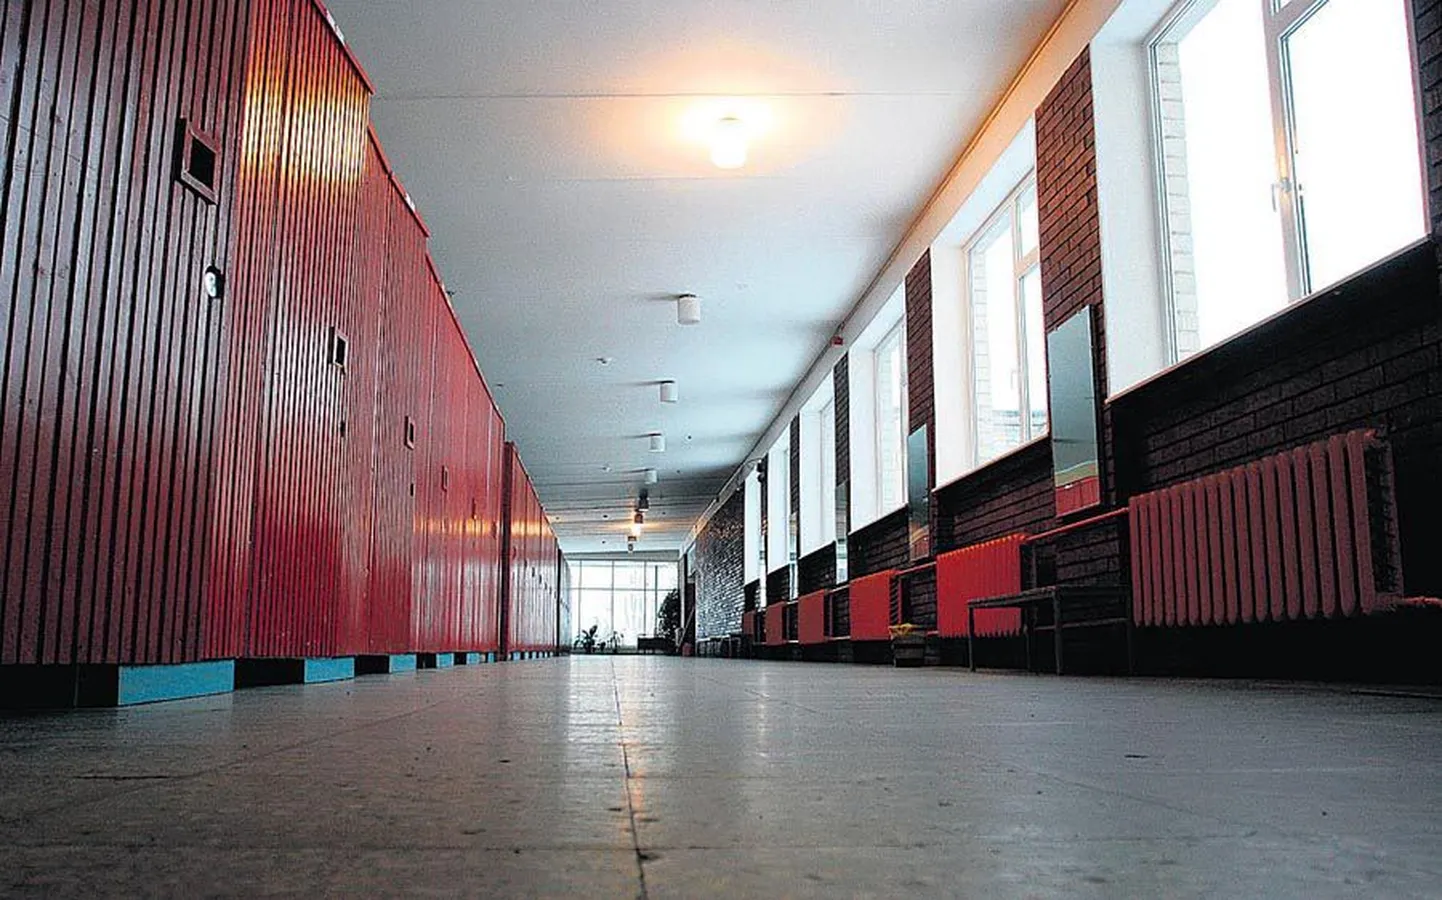 Pärast maagümnaasiumi õpilaste lahkumist näivad Kaare kooli koridorid eriti tühjad.